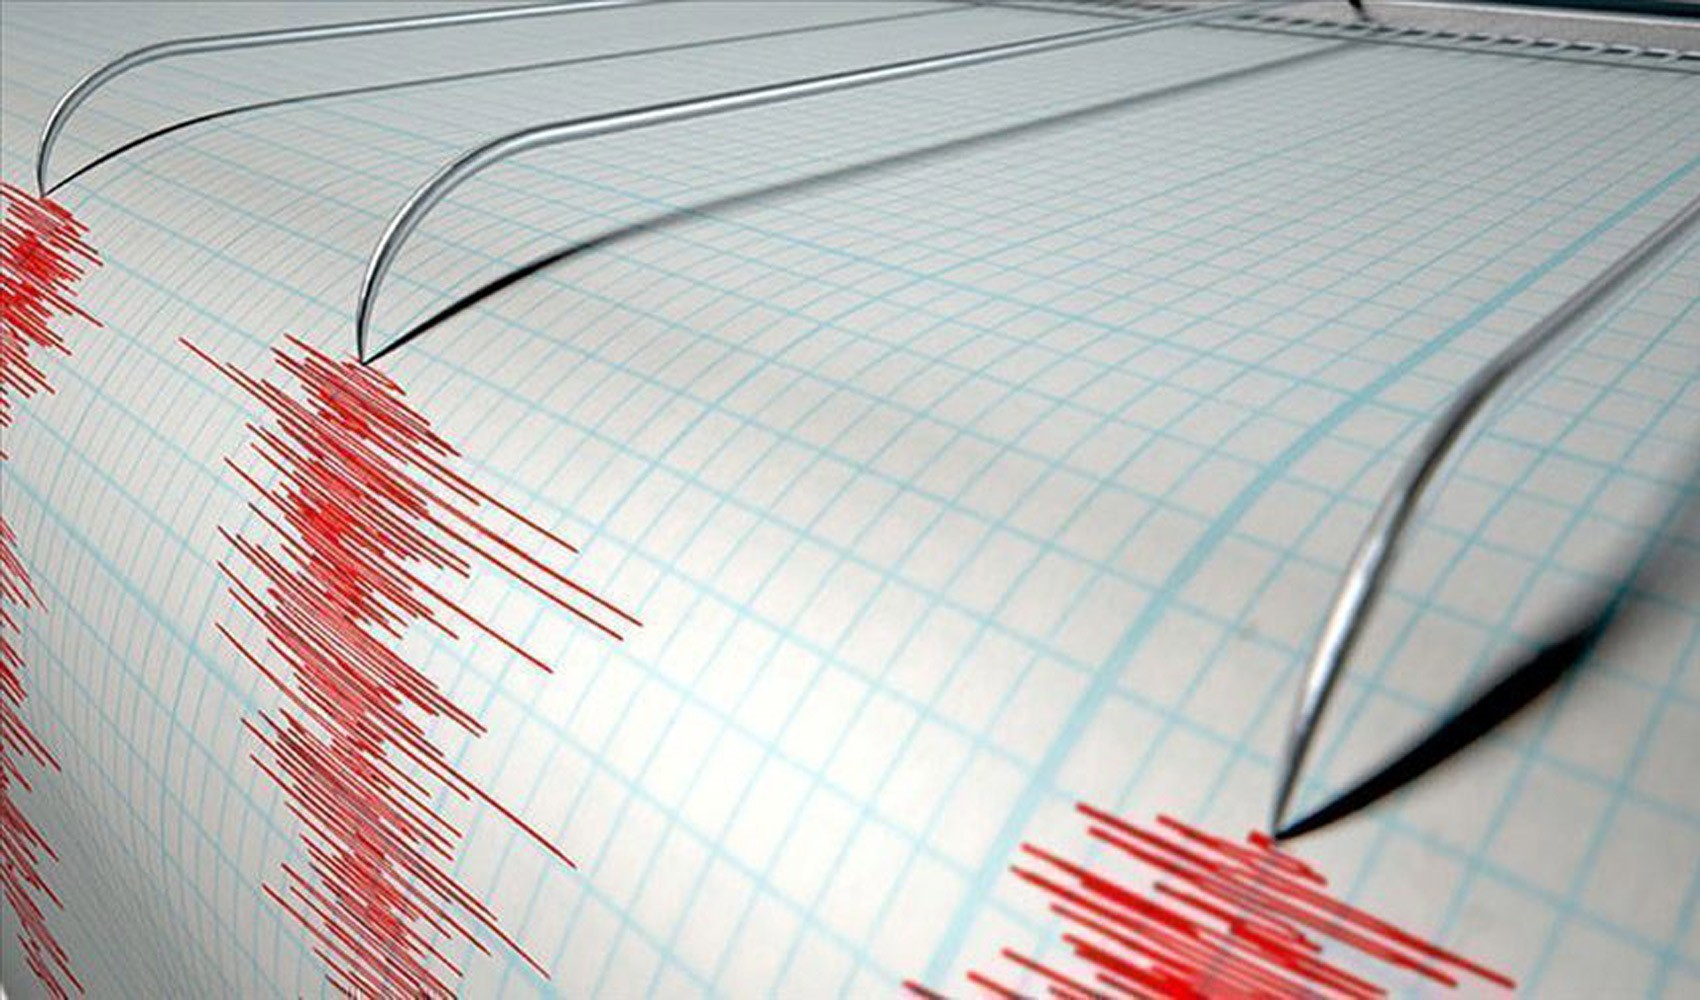 Muğla'nın Datça ilçesinde deprem meydana geldi